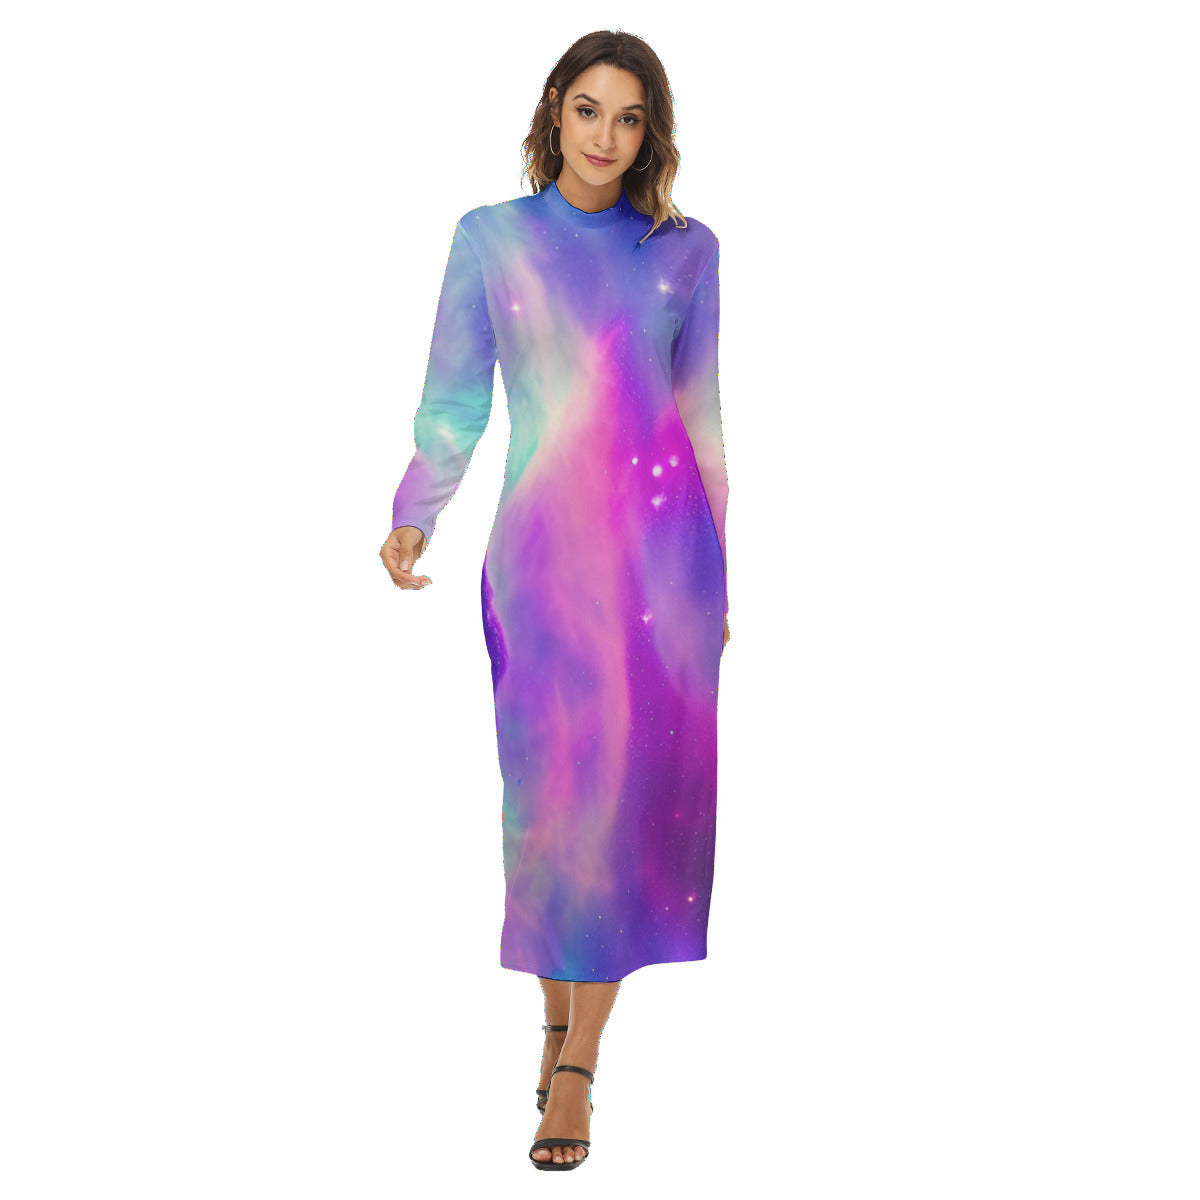 Vibrant Iridescent Cosmic Nebula Women's Fashion Hip Dress The Nebula Palace: Spiritually Cosmic Fashion